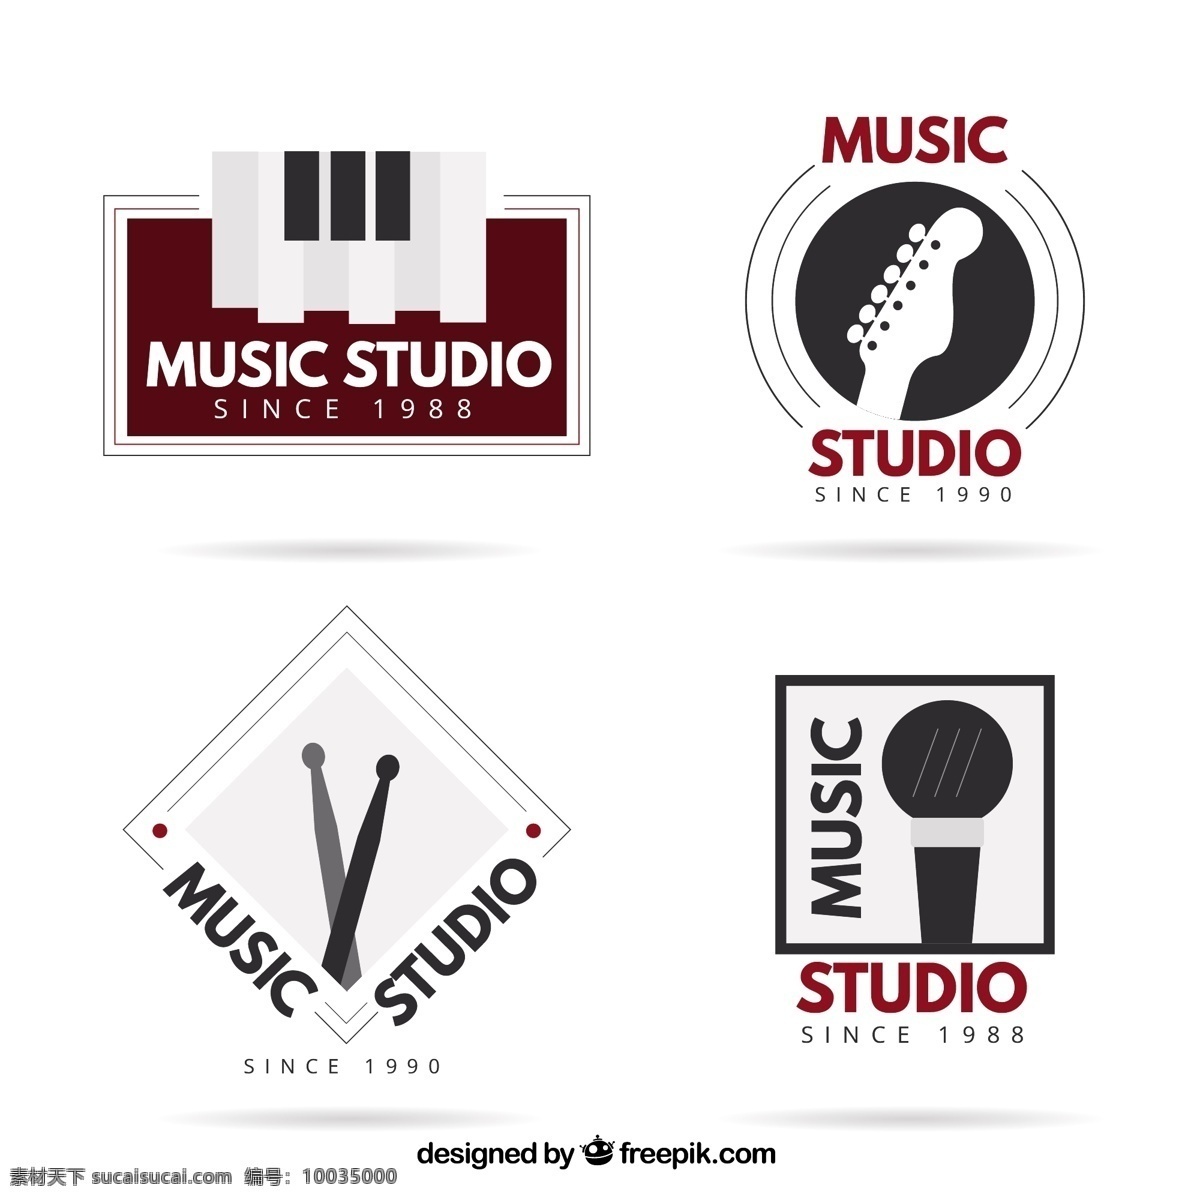 优雅 标志 一个 音乐 工作室 标识 业务 技术 dj 艺术 麦克风 广播 企业 公司 品牌 钢琴 音响 耳机 音箱 游戏 音乐笔记 笔记